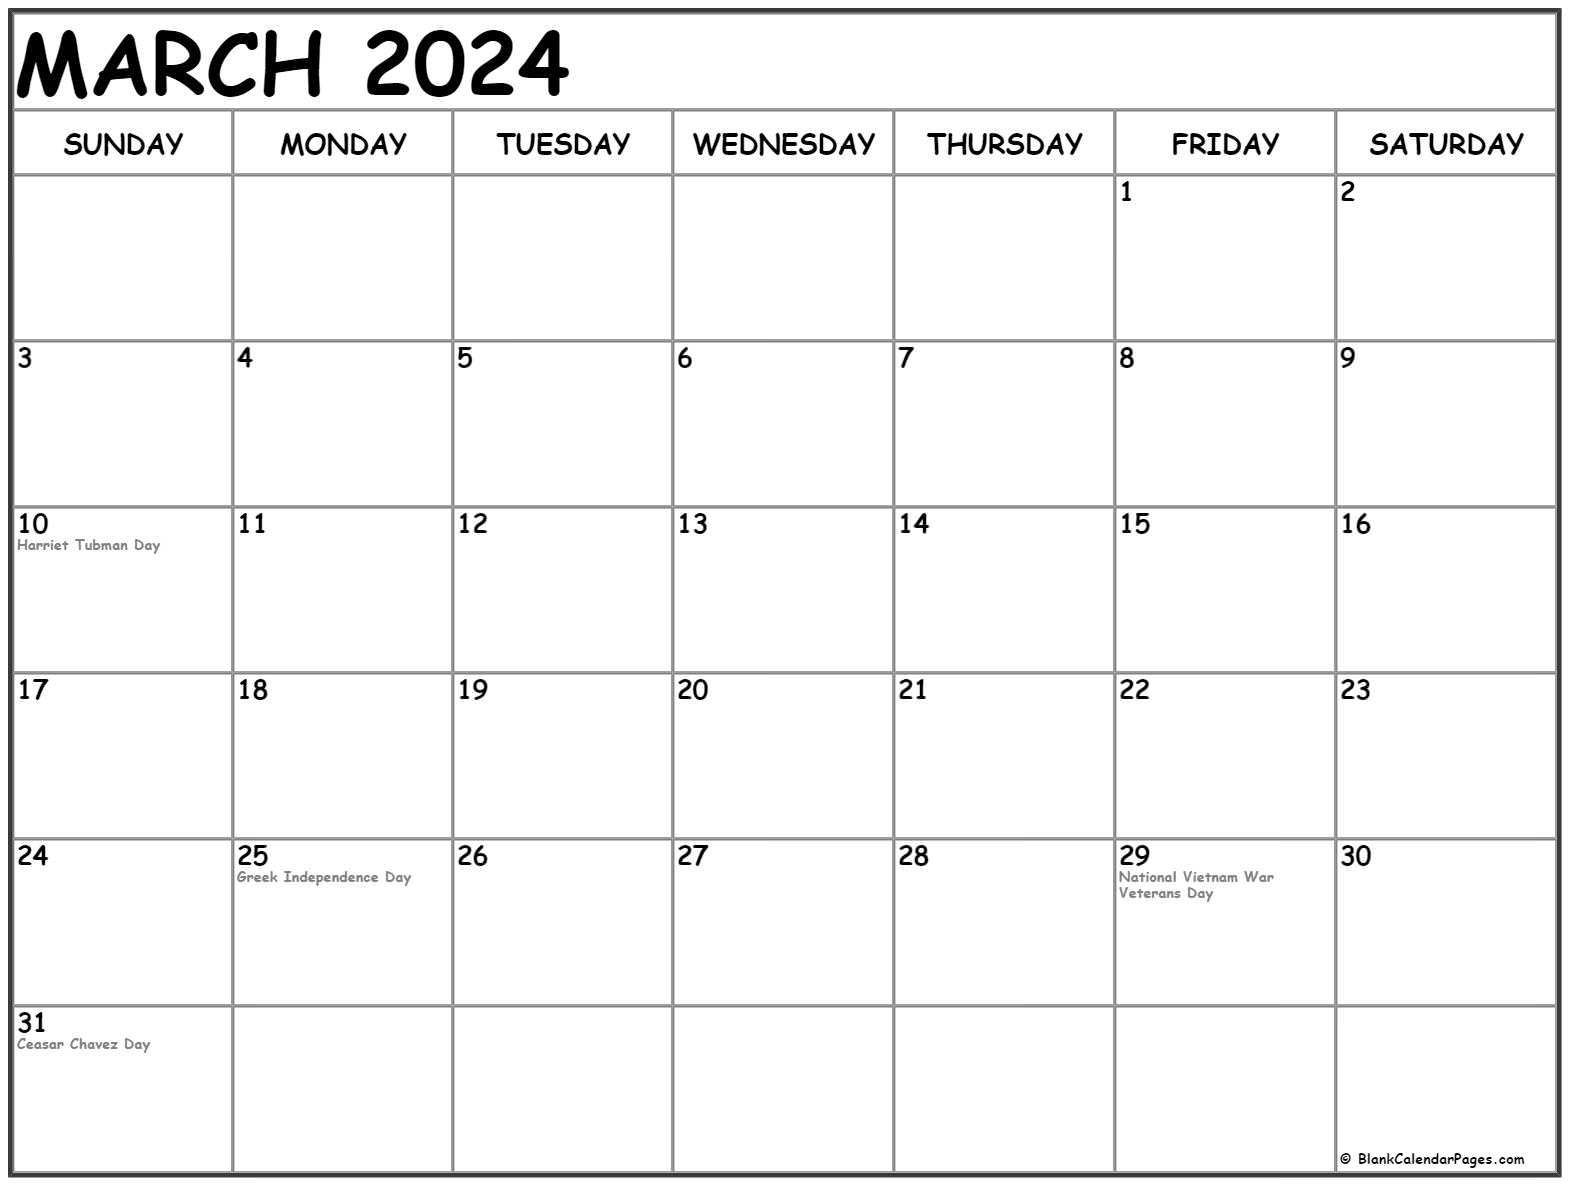 march-2023-holiday-calendar-us-get-calendar-2023-update